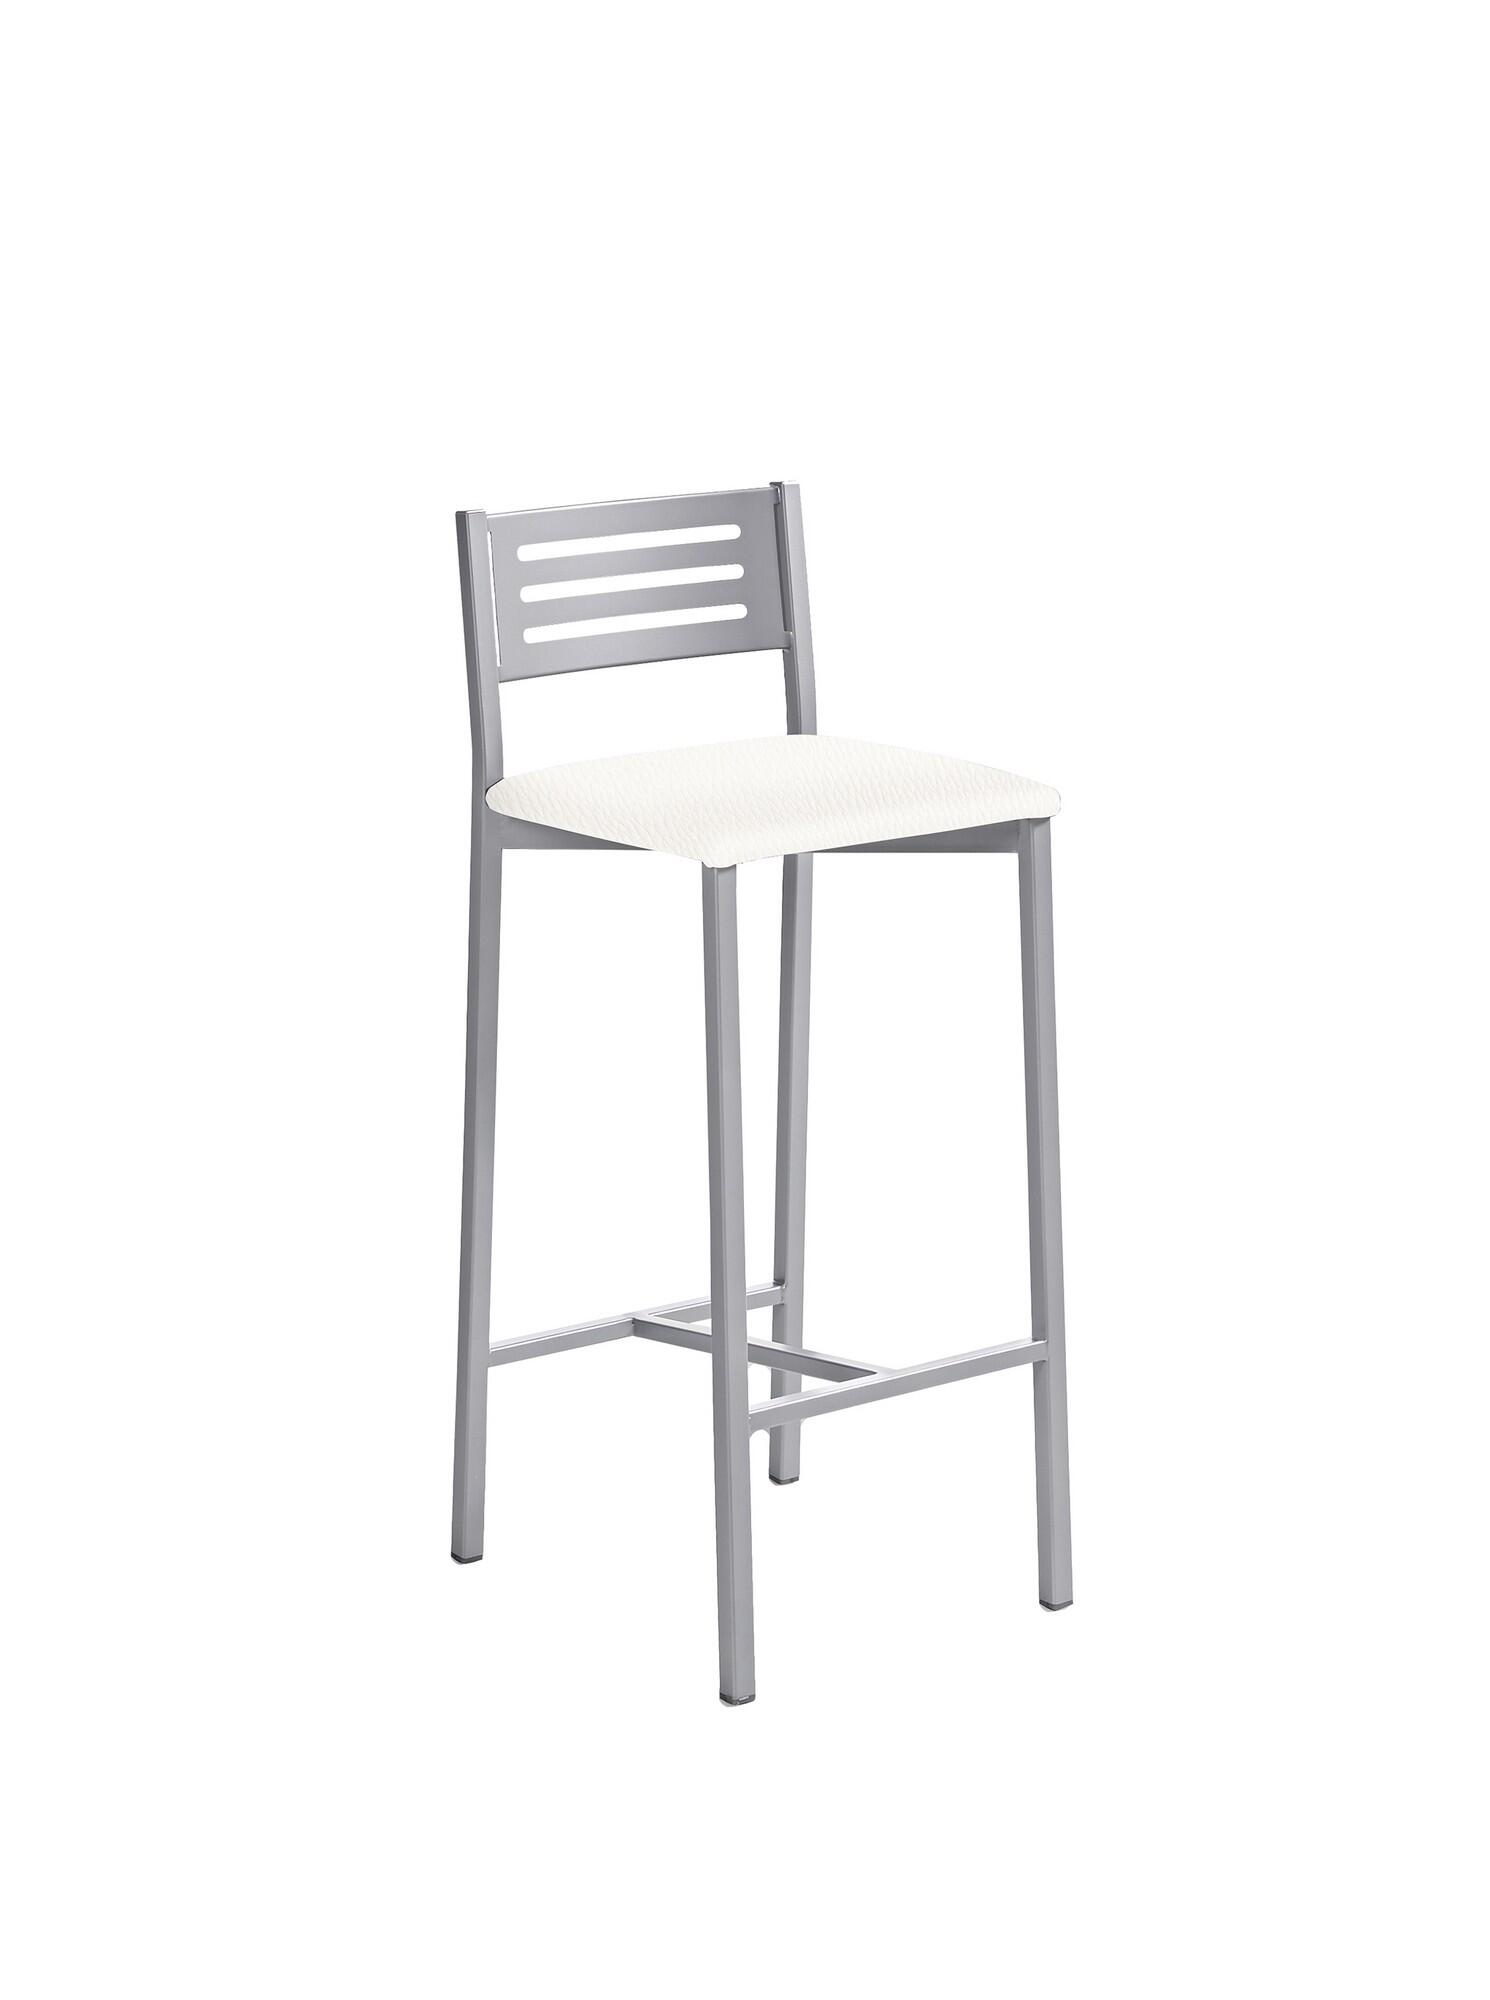 Taburete de estructura color epoxi aluminio y asiento blanco de 33 x 66 cm